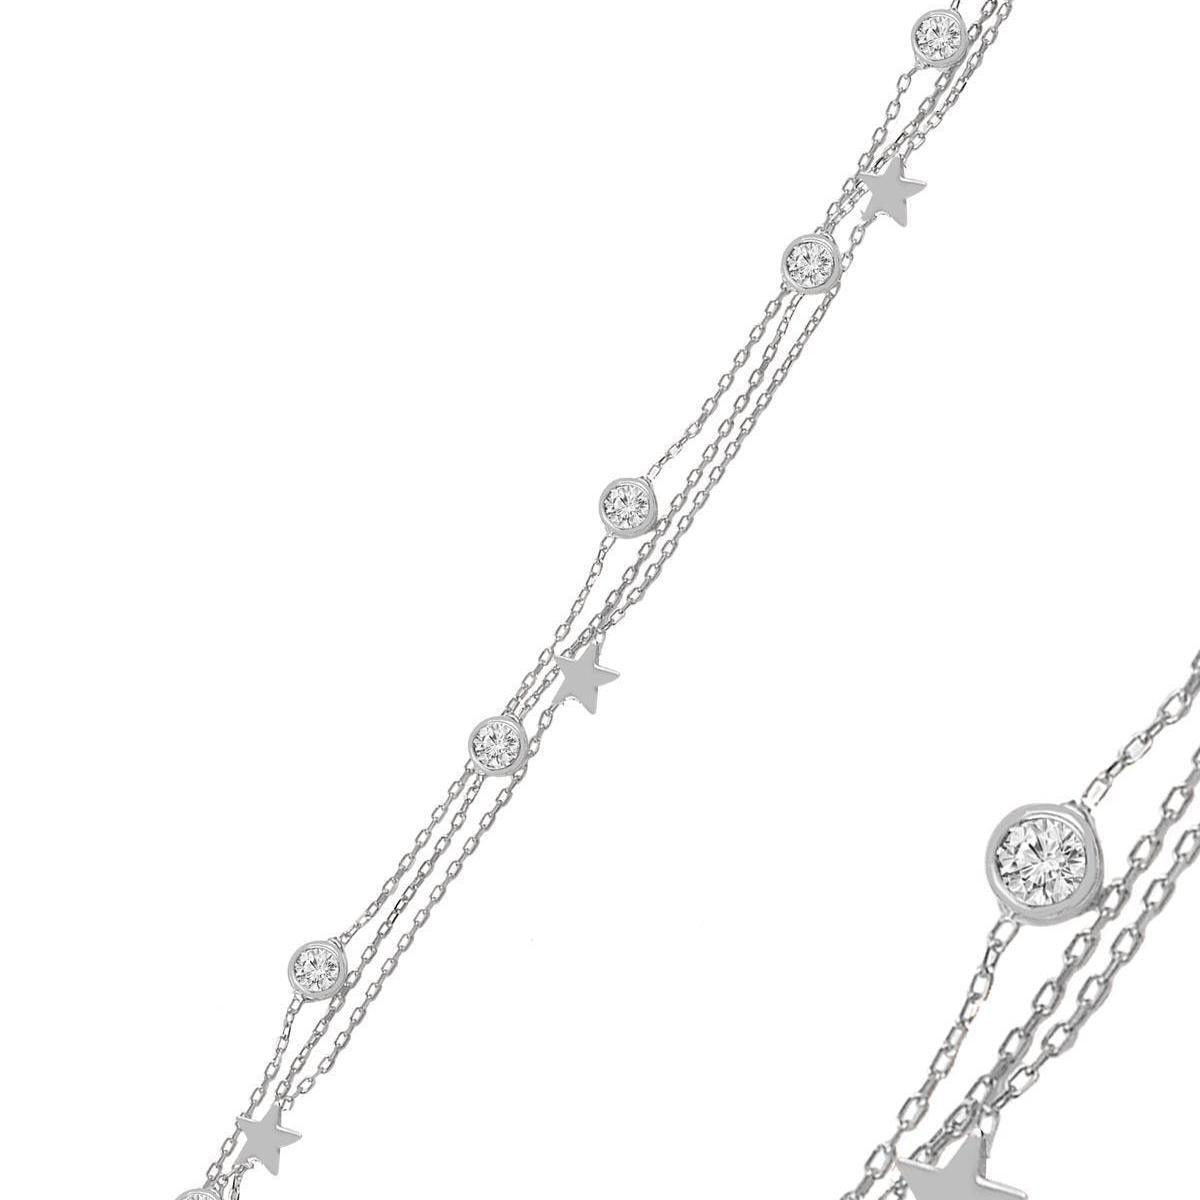 Star Bracelet Silver • Solitaire Diamond Bracelet • Gift For Her - Trending Silver Gifts